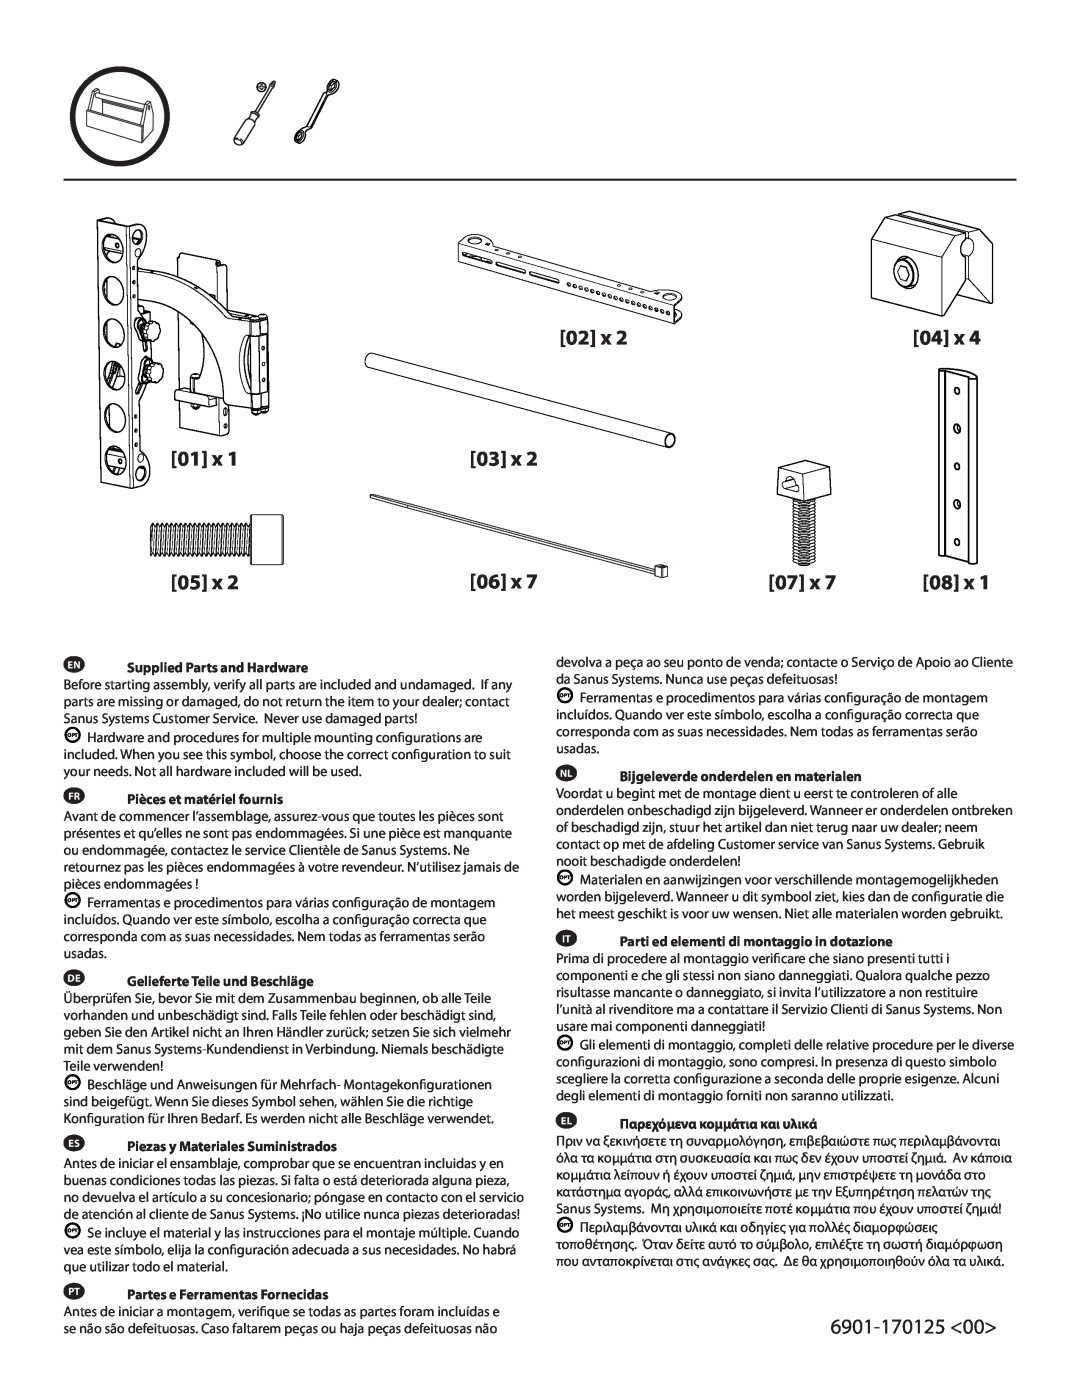 Sanus Systems LRF118-B1 manual 6901-170125, EN Supplied Parts and Hardware, FR Pièces et matériel fournis 